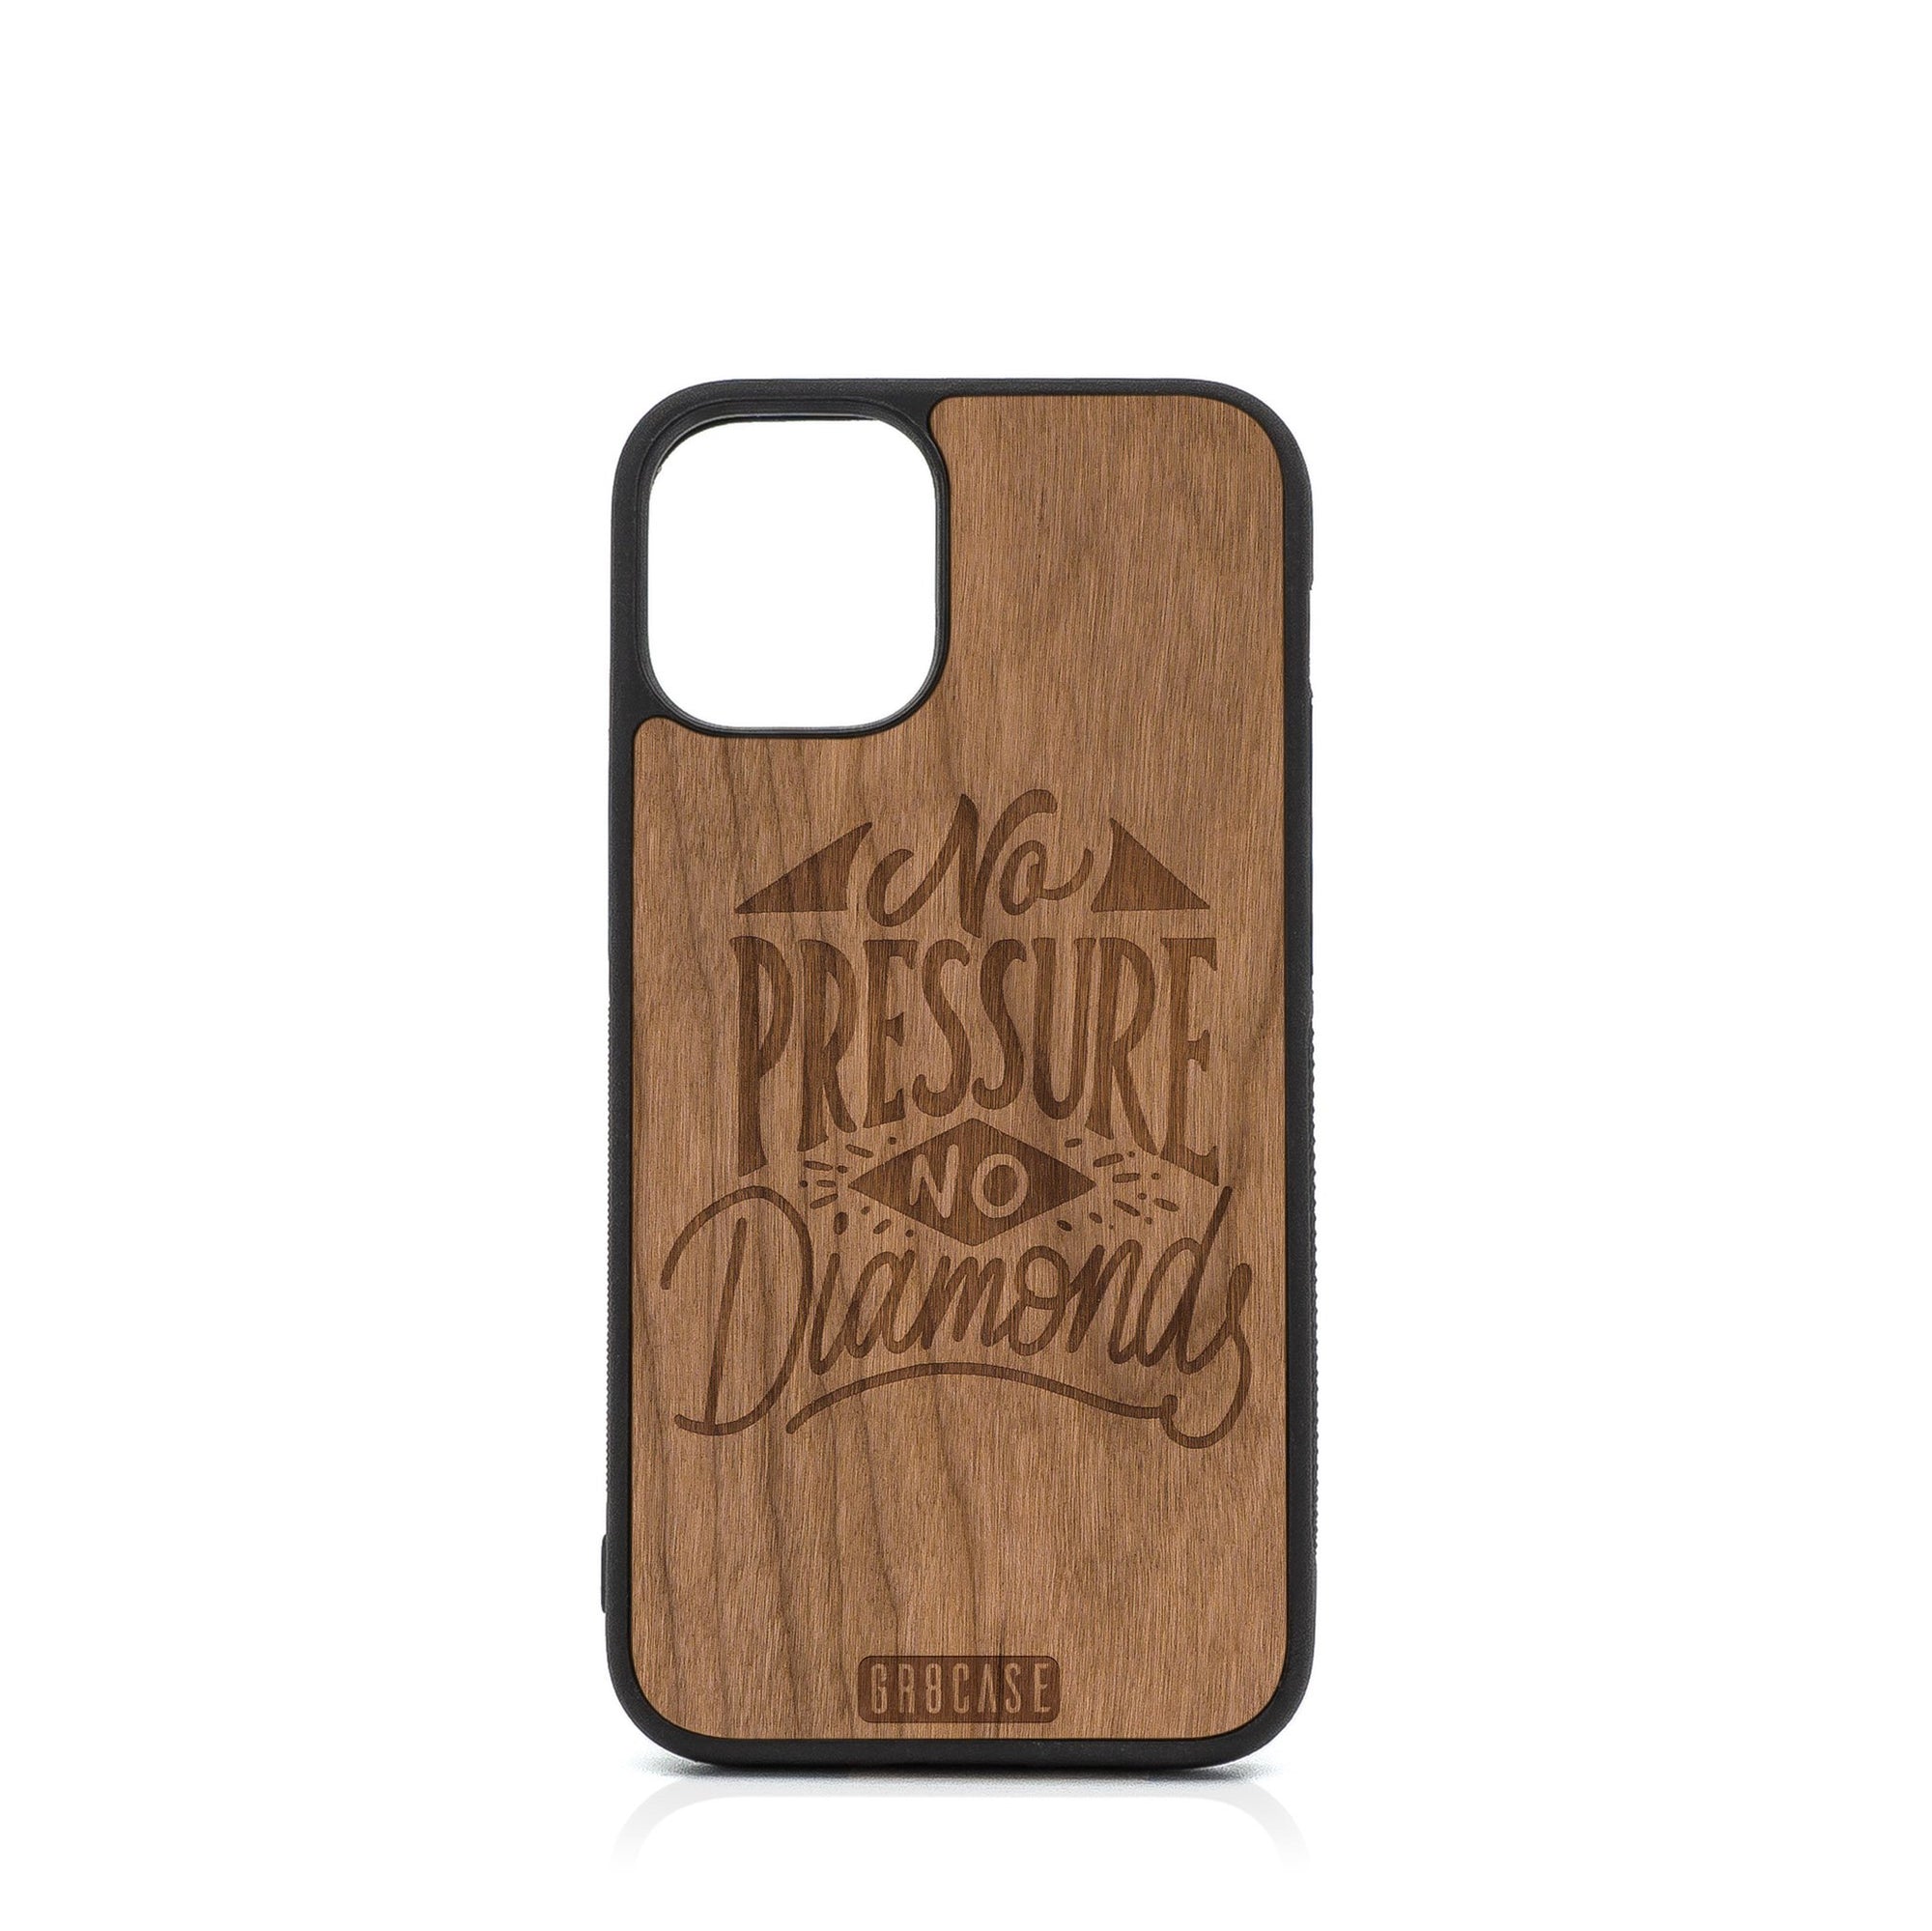 No Pressure No Diamonds Design Wood Case For iPhone 12 Mini